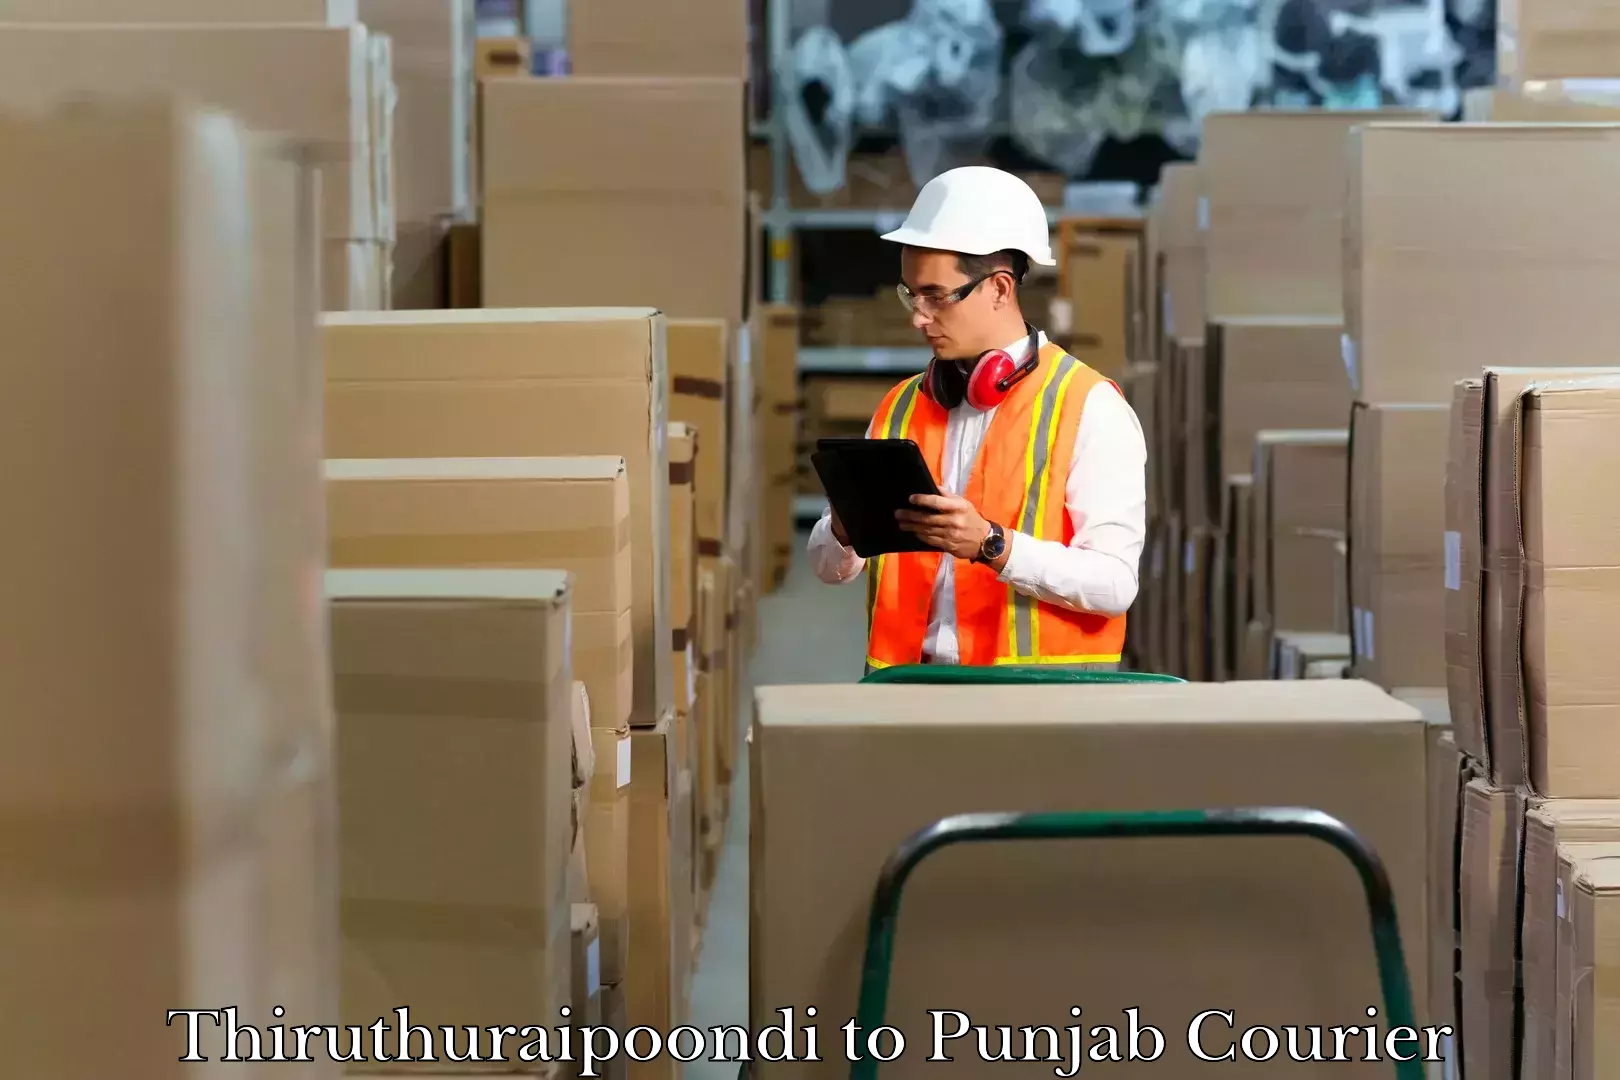 Baggage relocation service Thiruthuraipoondi to Punjab